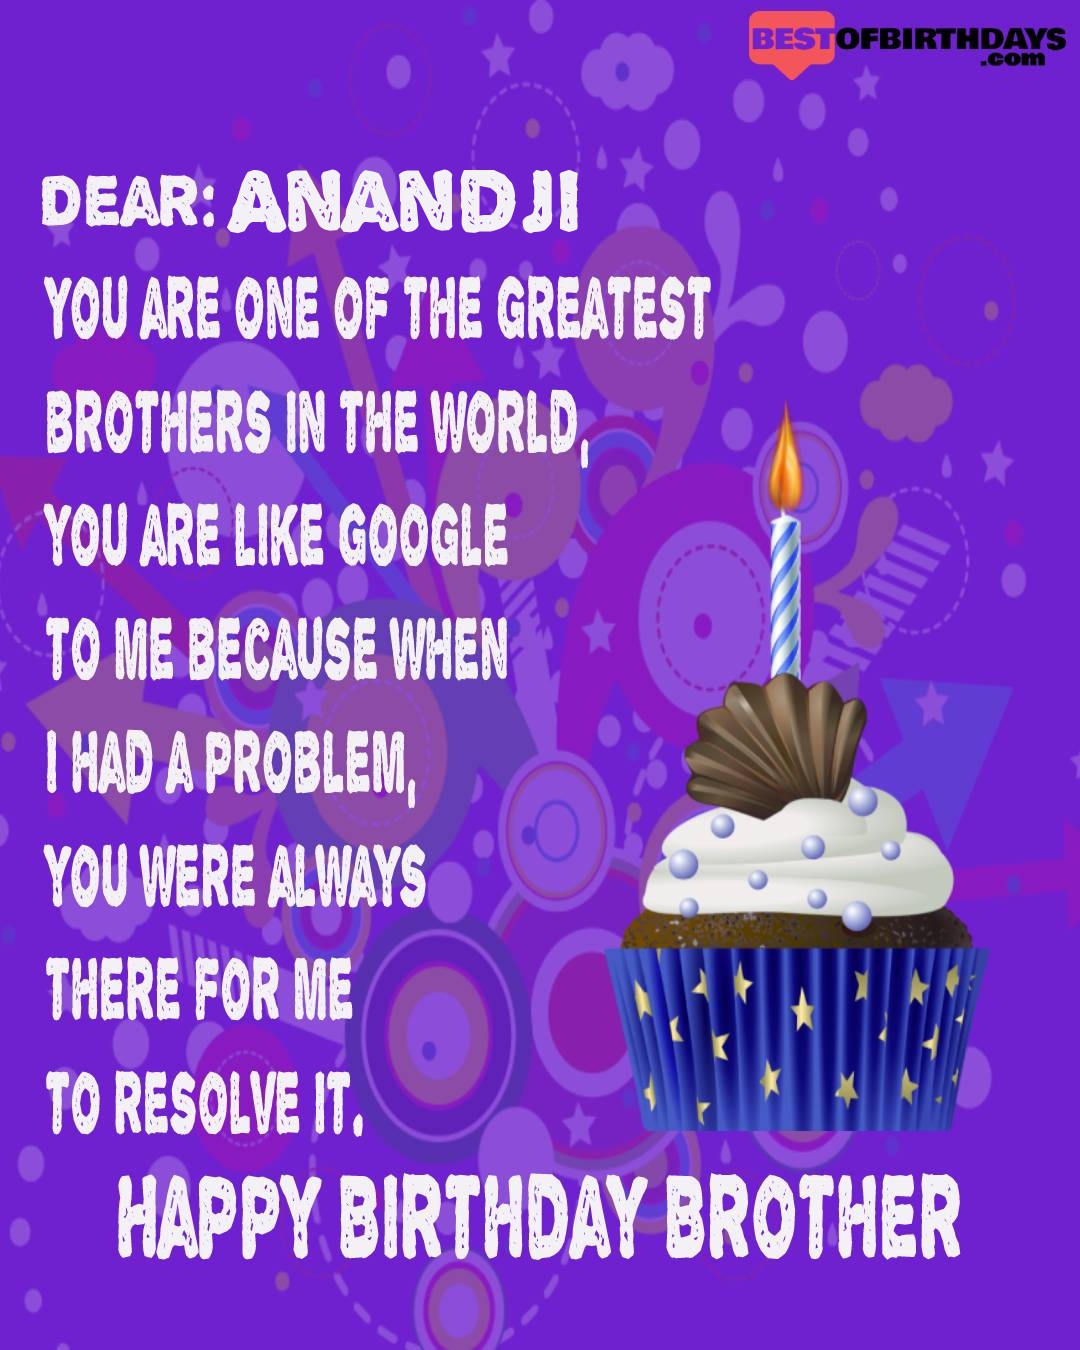 Happy birthday anandji bhai brother bro